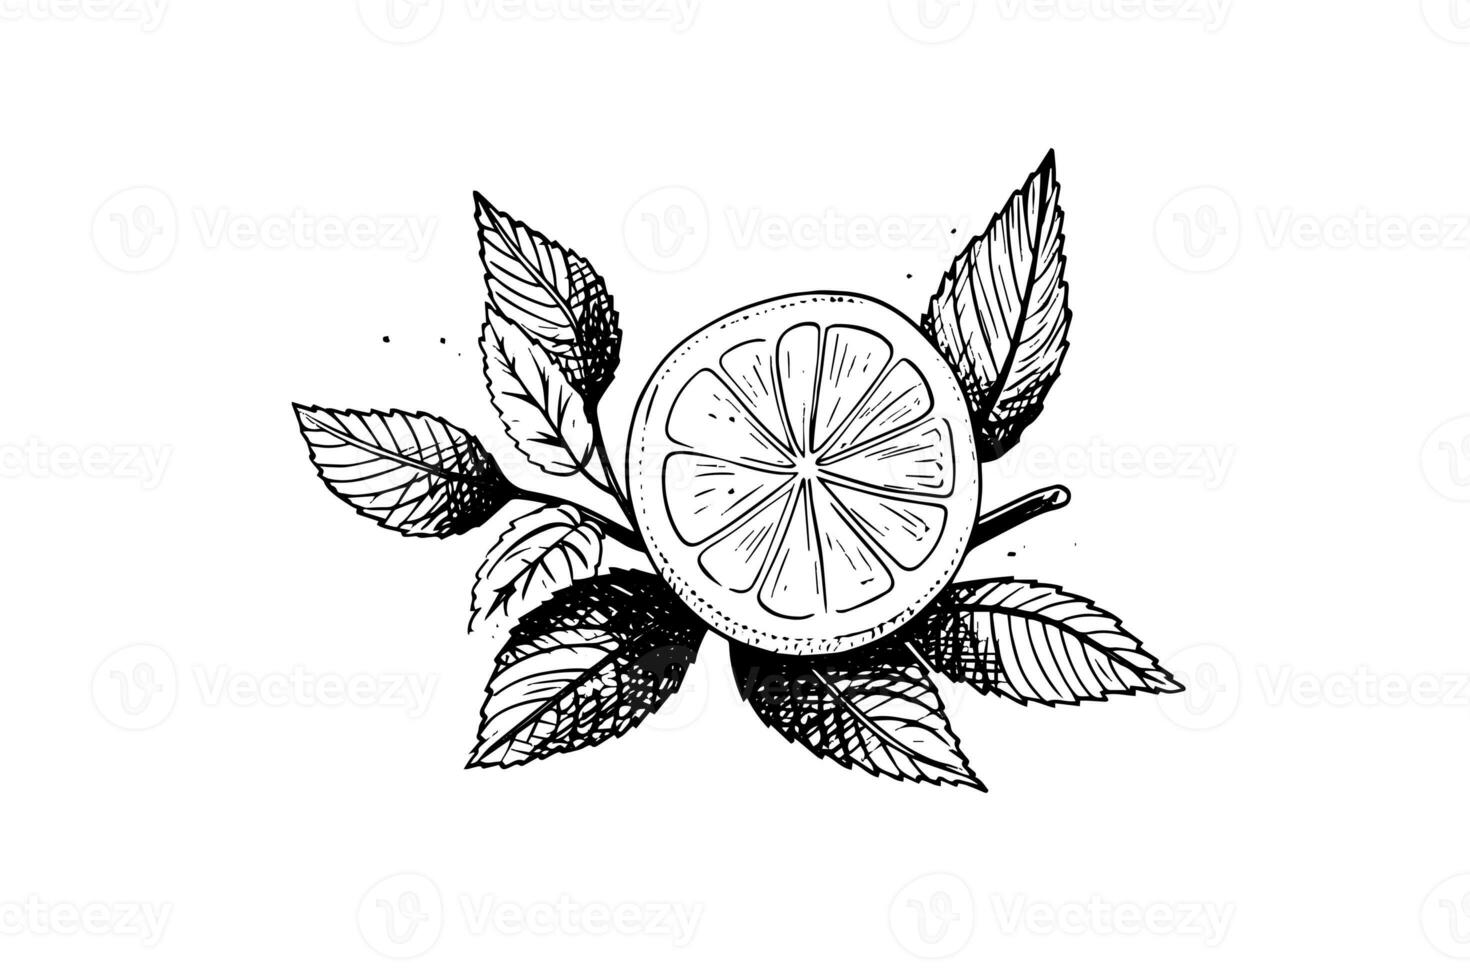 limoni e menta mano disegnato vettore illustrazione. totale frutta, affettato pezzo e le foglie disegno. foto